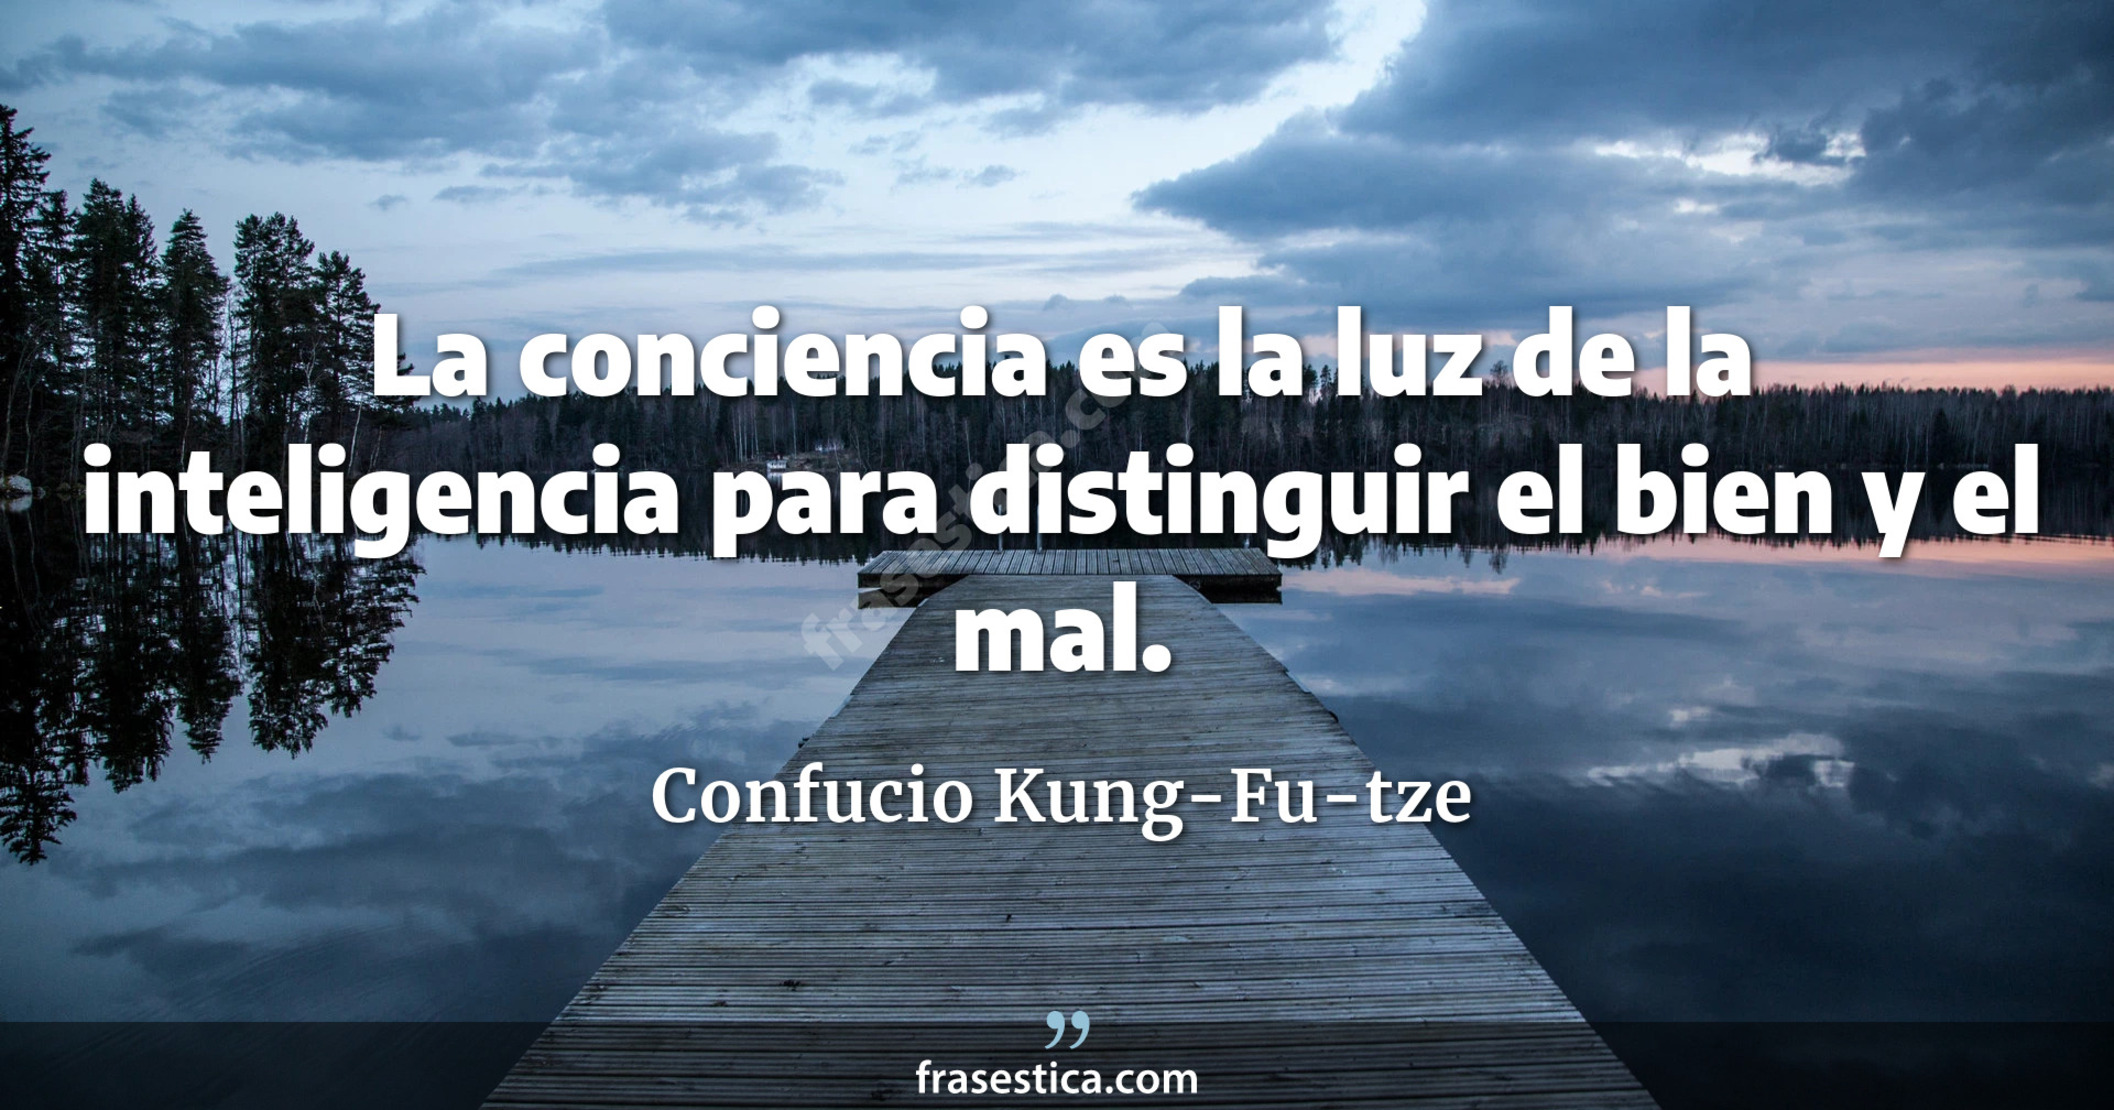 La conciencia es la luz de la inteligencia para distinguir el bien y el mal. - Confucio Kung-Fu-tze